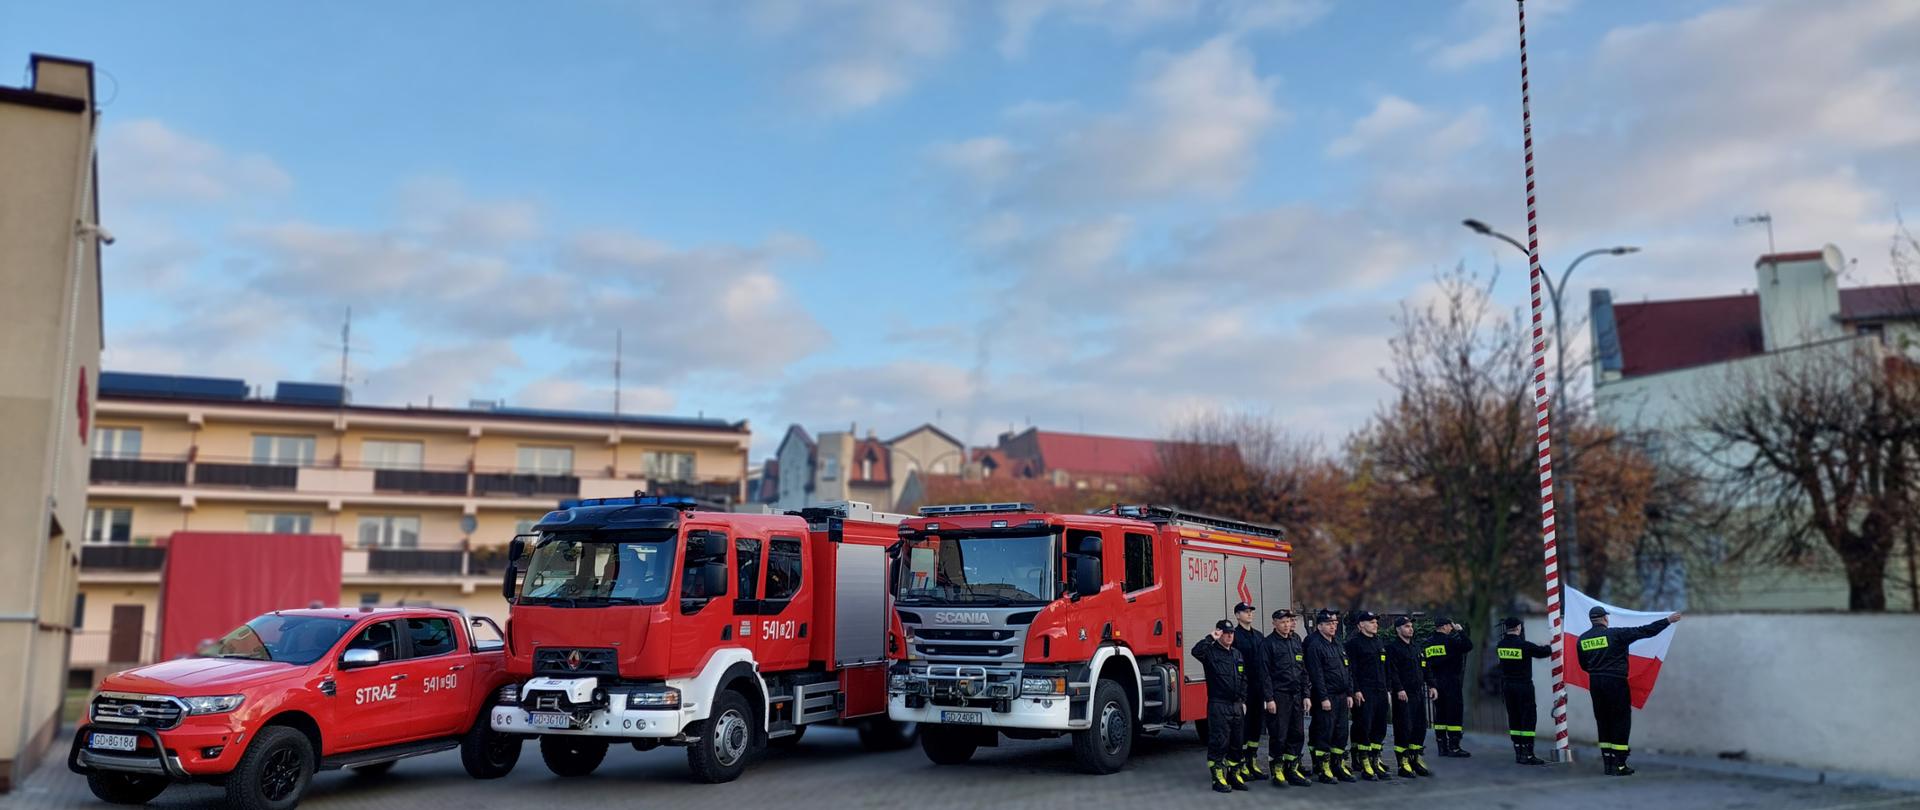 Na zdjęciu uroczysta zbiórka z okazji 105 rocznicy odzyskania przez Polskę niepodległości. Poczet flagowy zawiesza flagę Polski na maszt. Strażacy stoją w szyku. Za nimi ustawione są trzy samochody pożarnicze z Jednostki Ratowniczo-Gaśniczej w Tczewie.